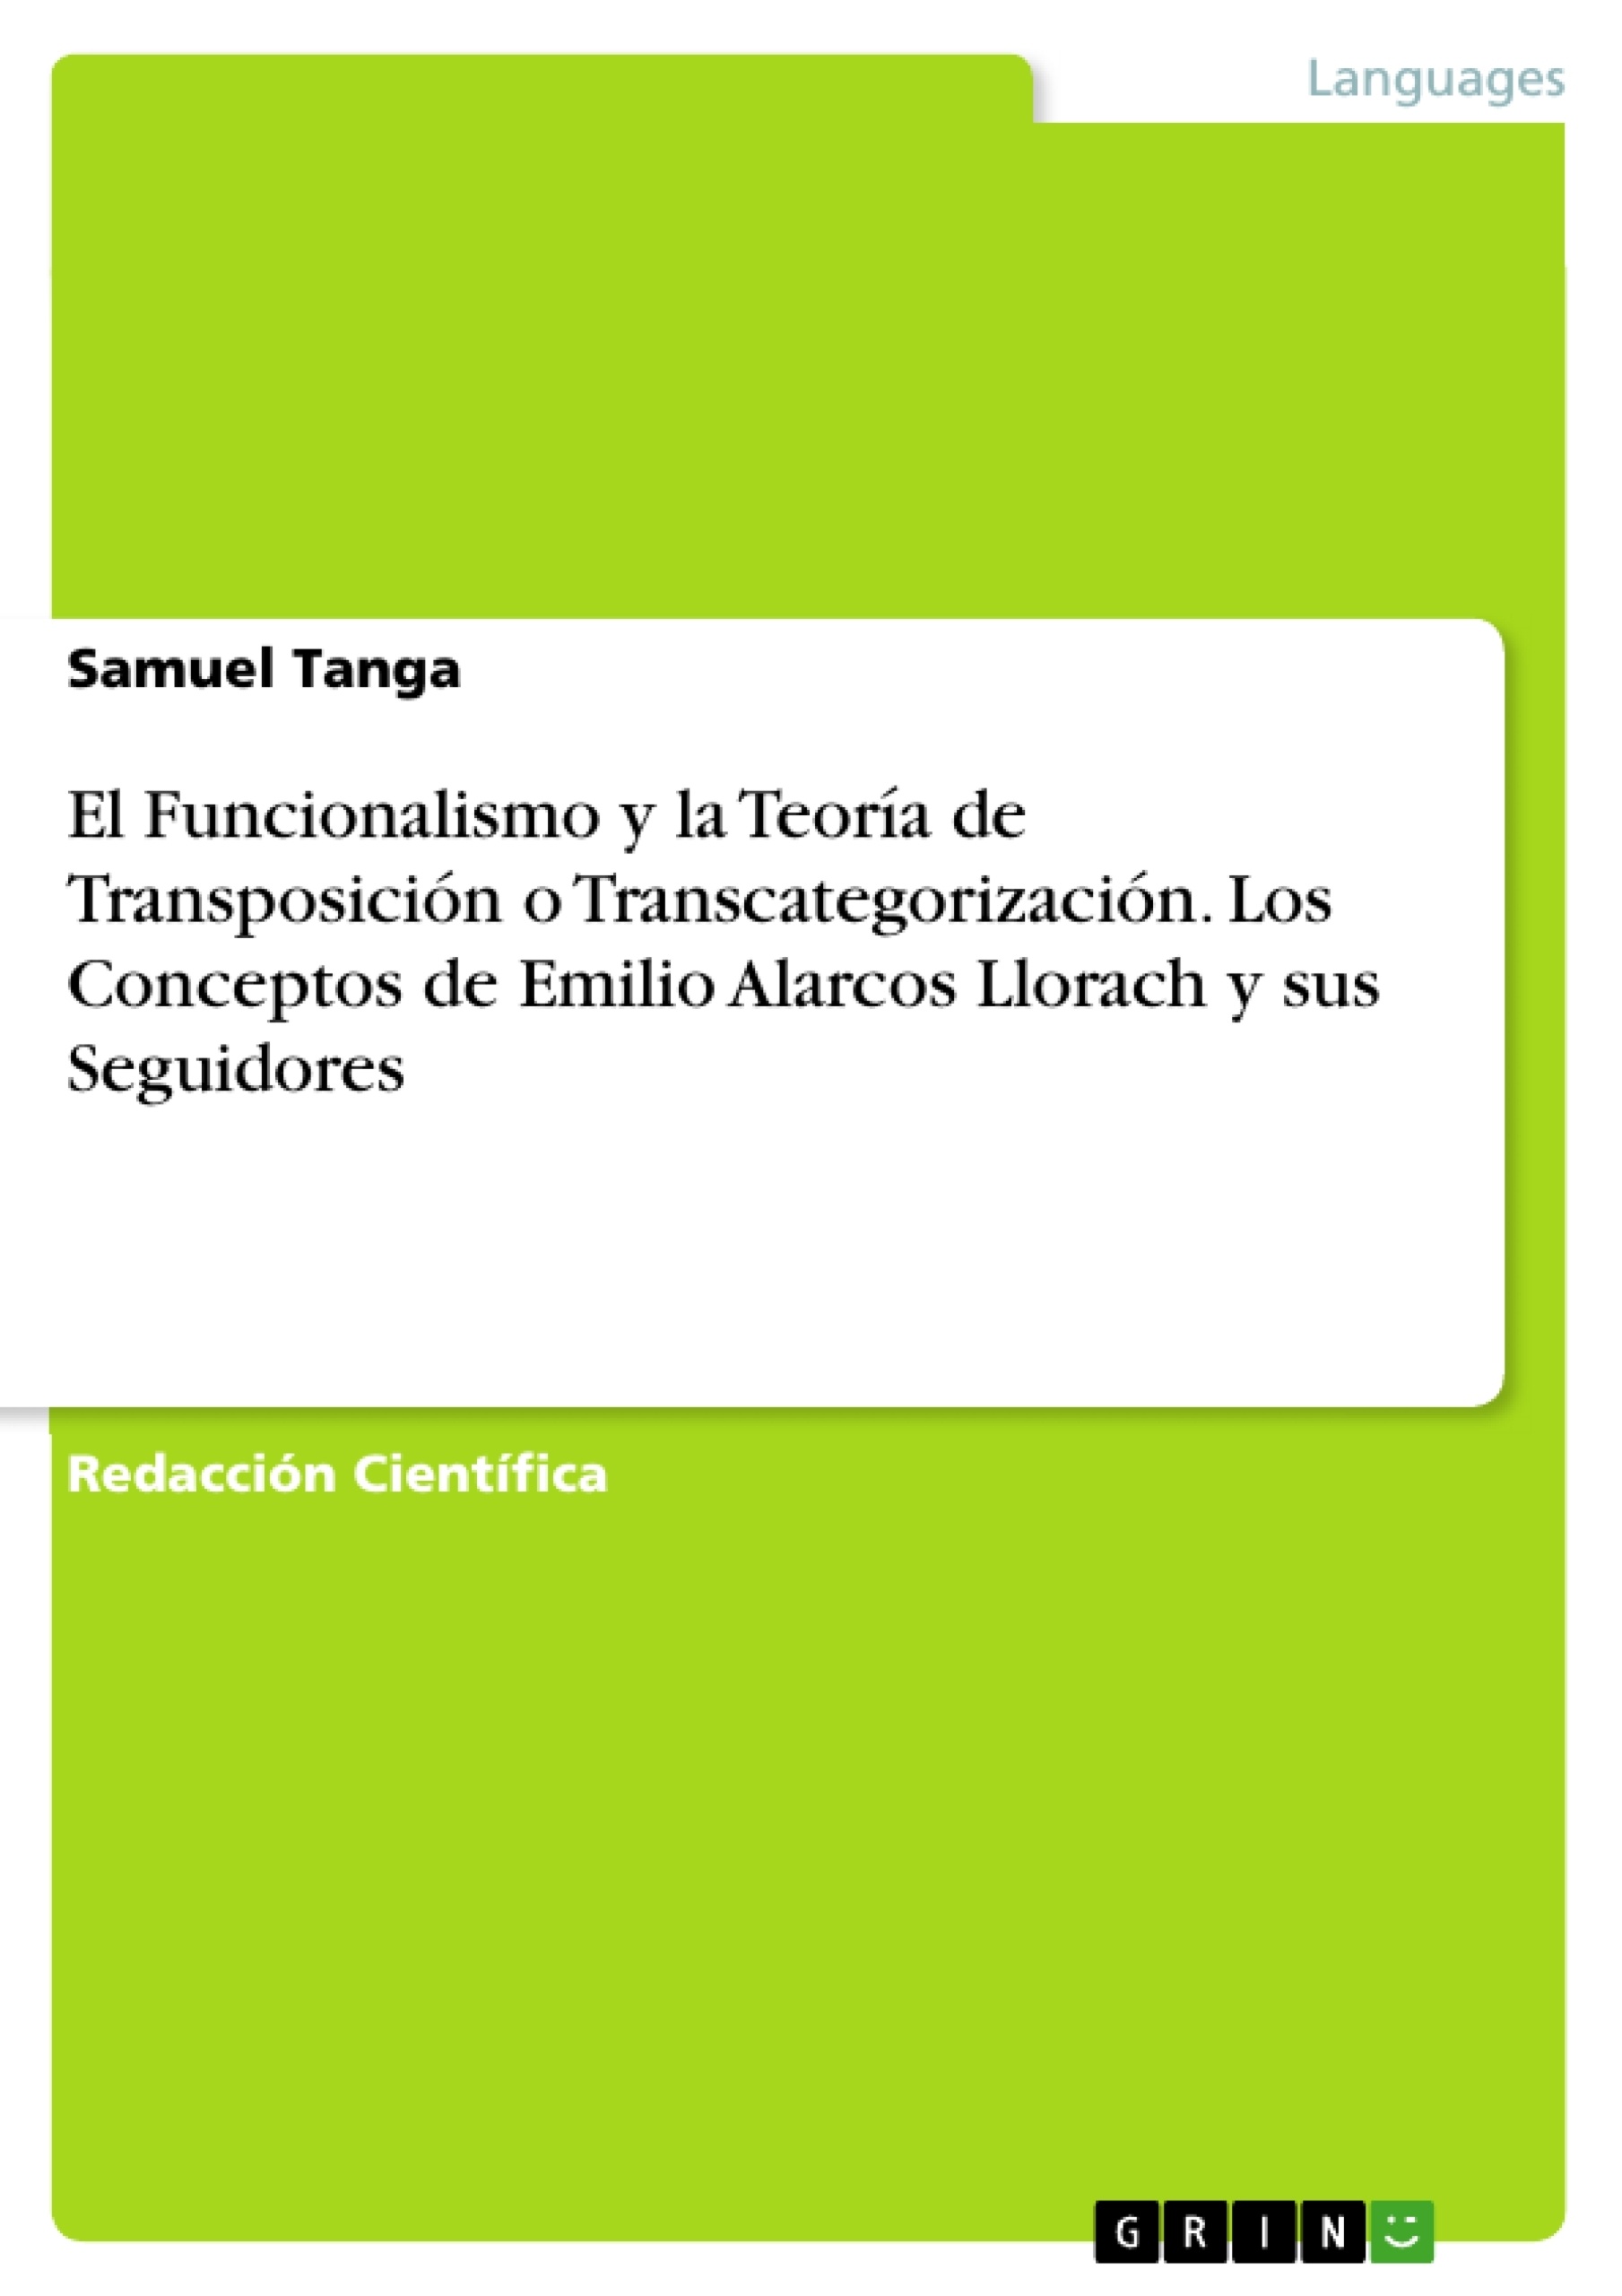 Título: El Funcionalismo y la Teoría de Transposición o Transcategorización. Los Conceptos de Emilio Alarcos Llorach y sus Seguidores